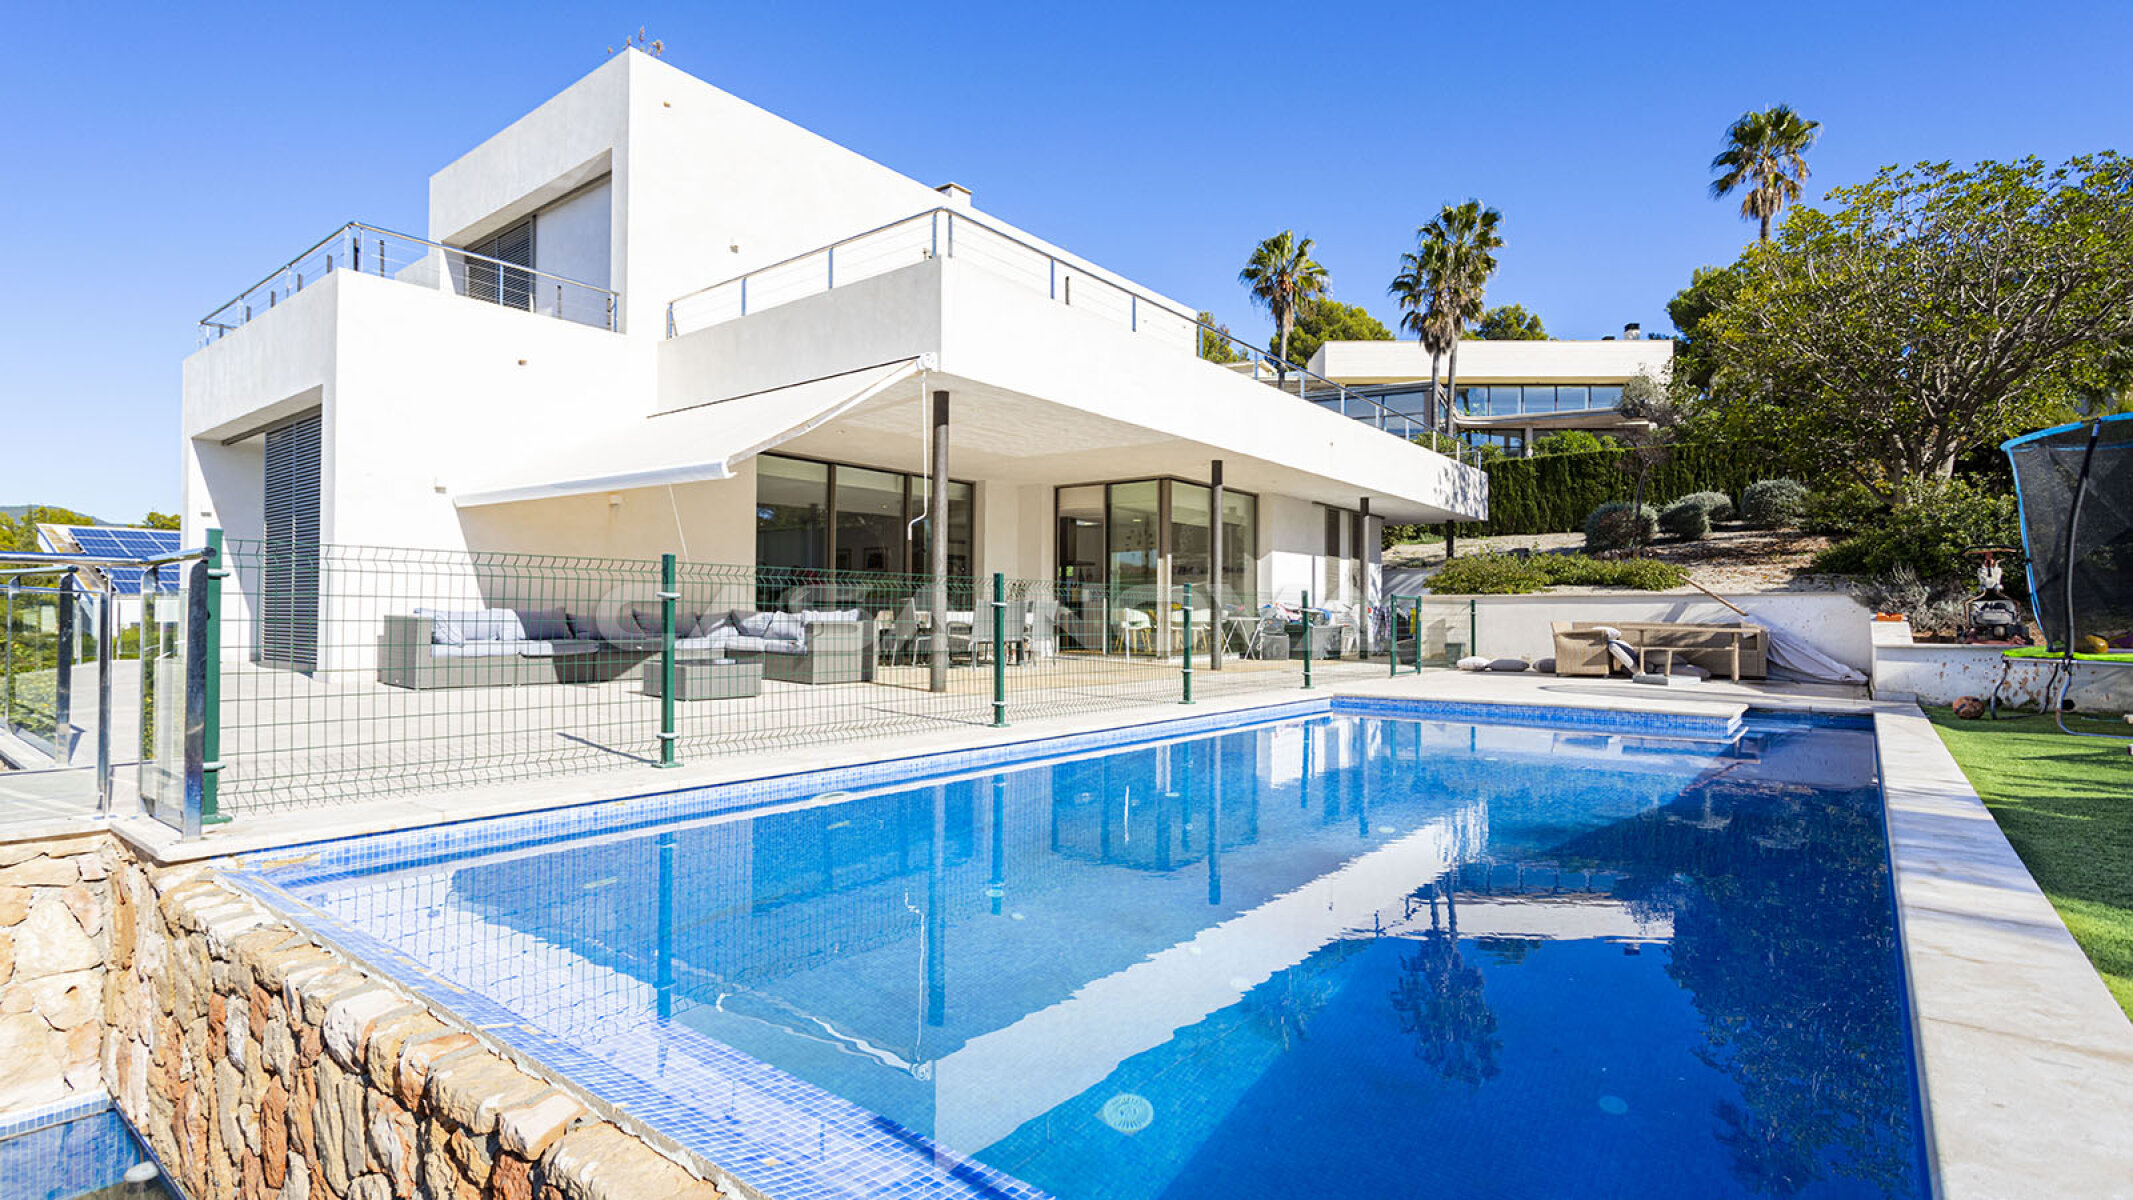 Elegante Villa mit Pool und Garten in beliebter Wohngegend